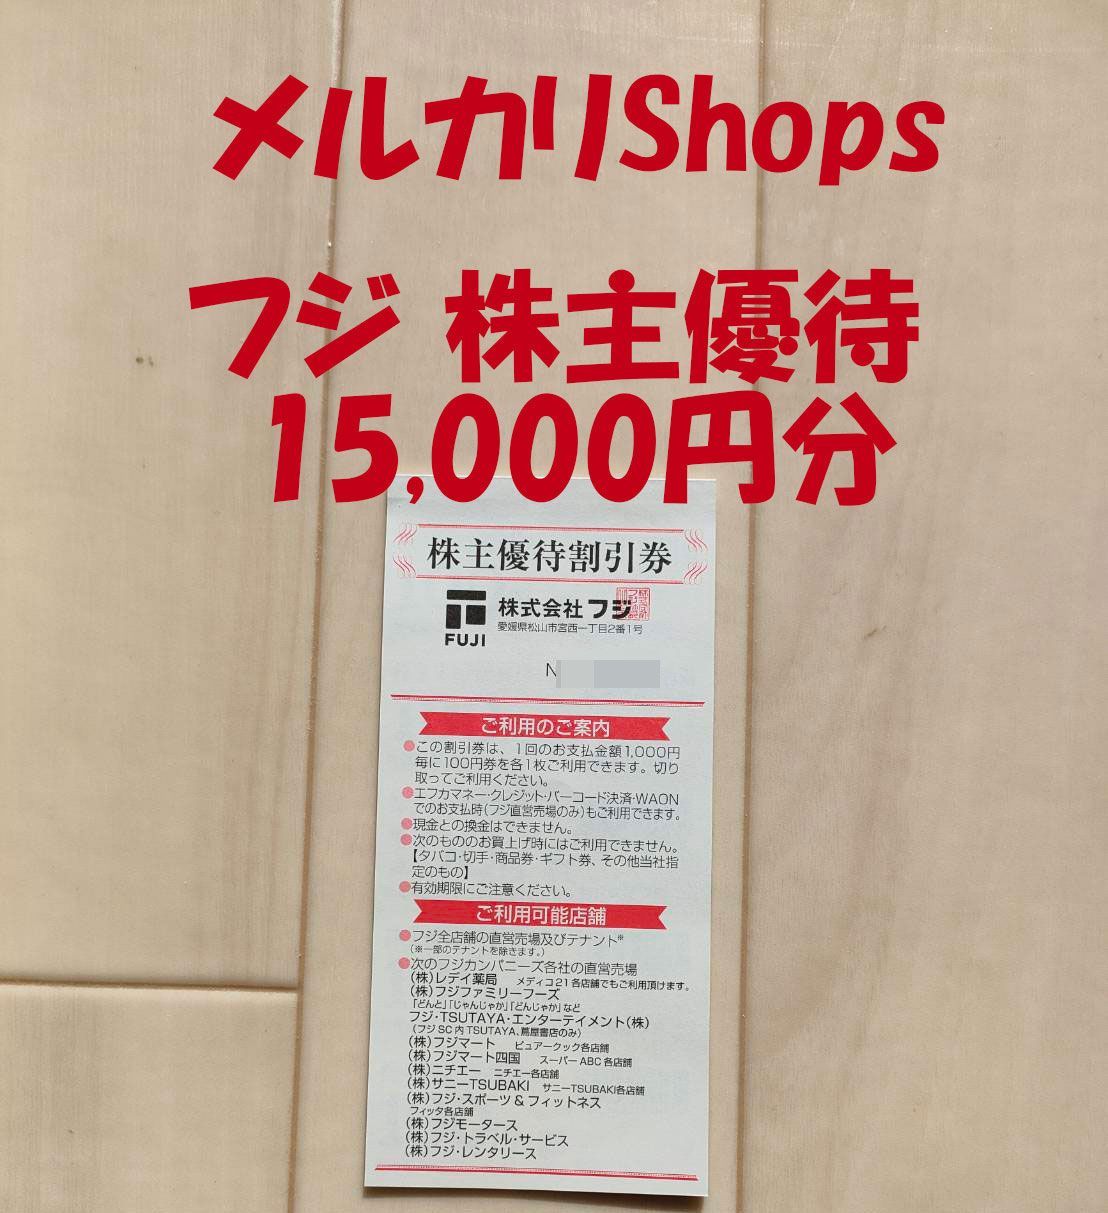 フジ 株主優待券 15,000円分 送料無料 レディ薬局 フジマート(1